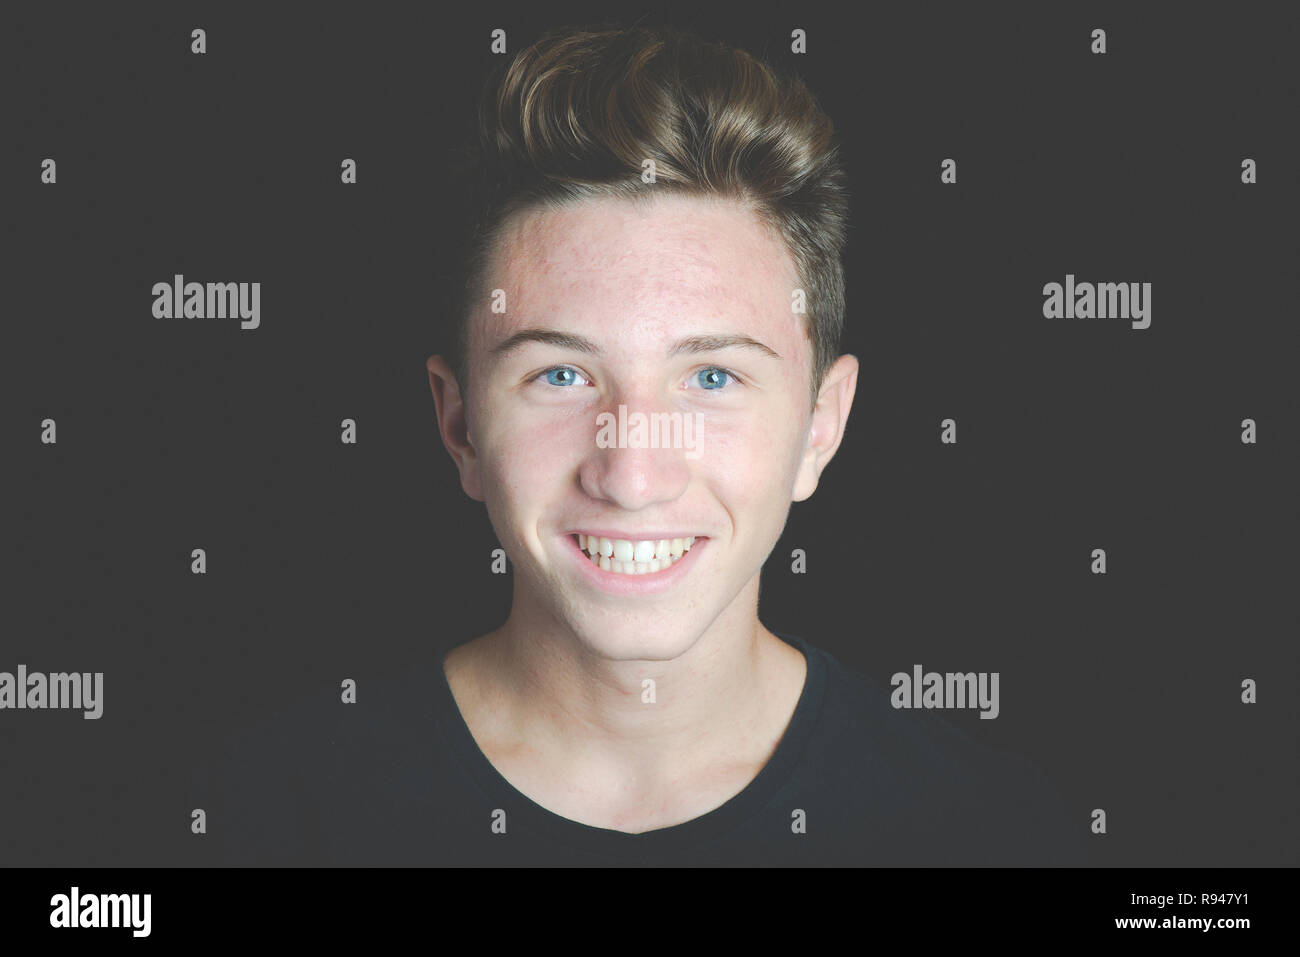 Giovane ragazzo sorridente ritratto su sfondo nero - Concetto di adolescenza senza problemi Foto Stock